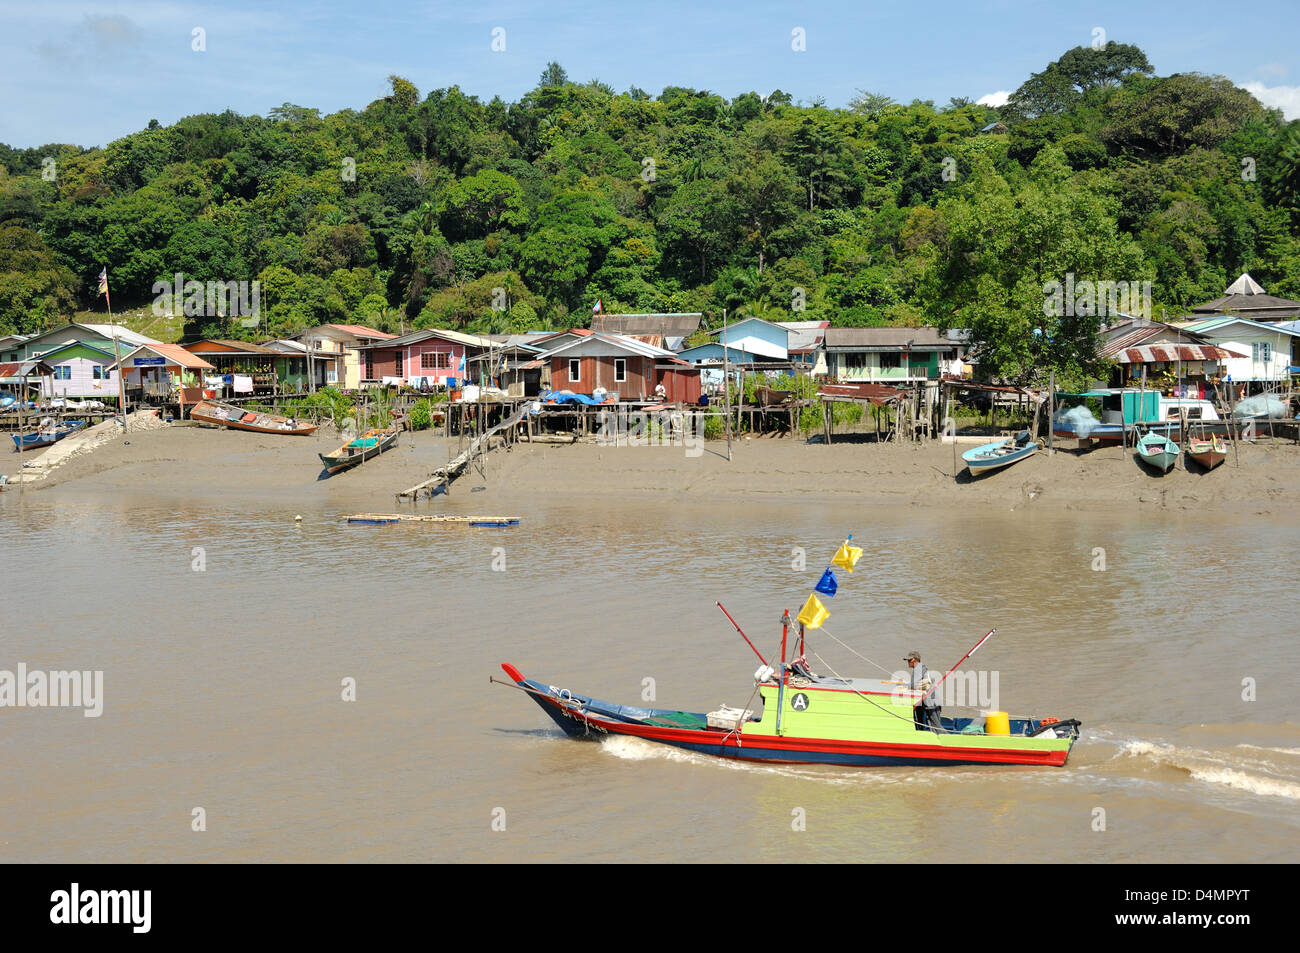 Tradizionale barca sul fiume in legno che attraversa un villaggio costiero di Malay Stilt e la foresta pluviale di Lowland vicino al Parco Nazionale di Bako Sarawak Borneo Malesia Foto Stock